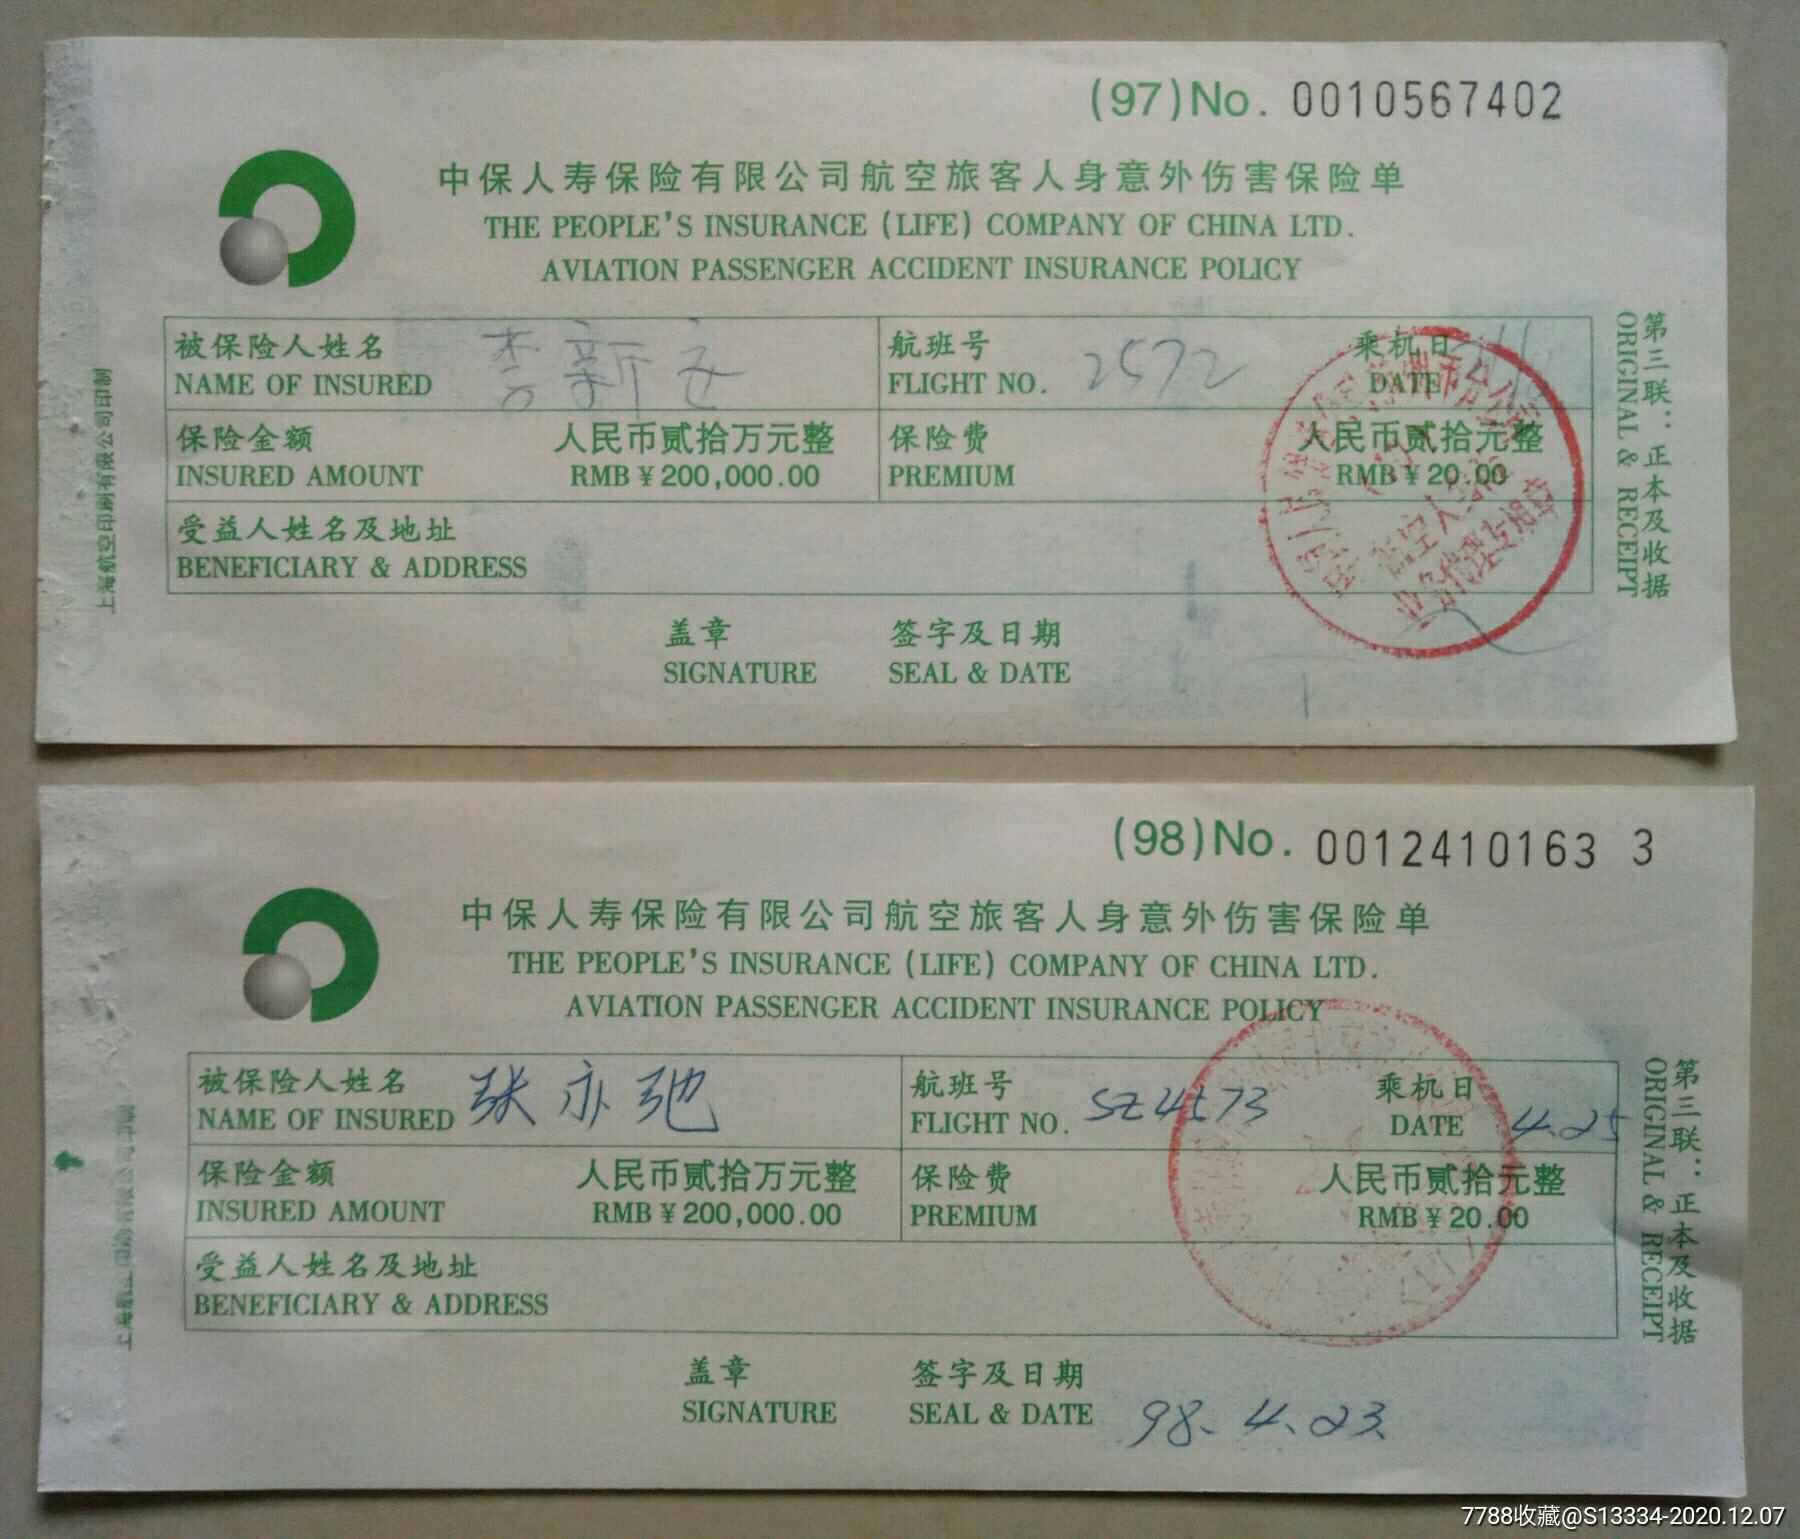 中国人寿航空旅客人身意外伤害保险单:2枚